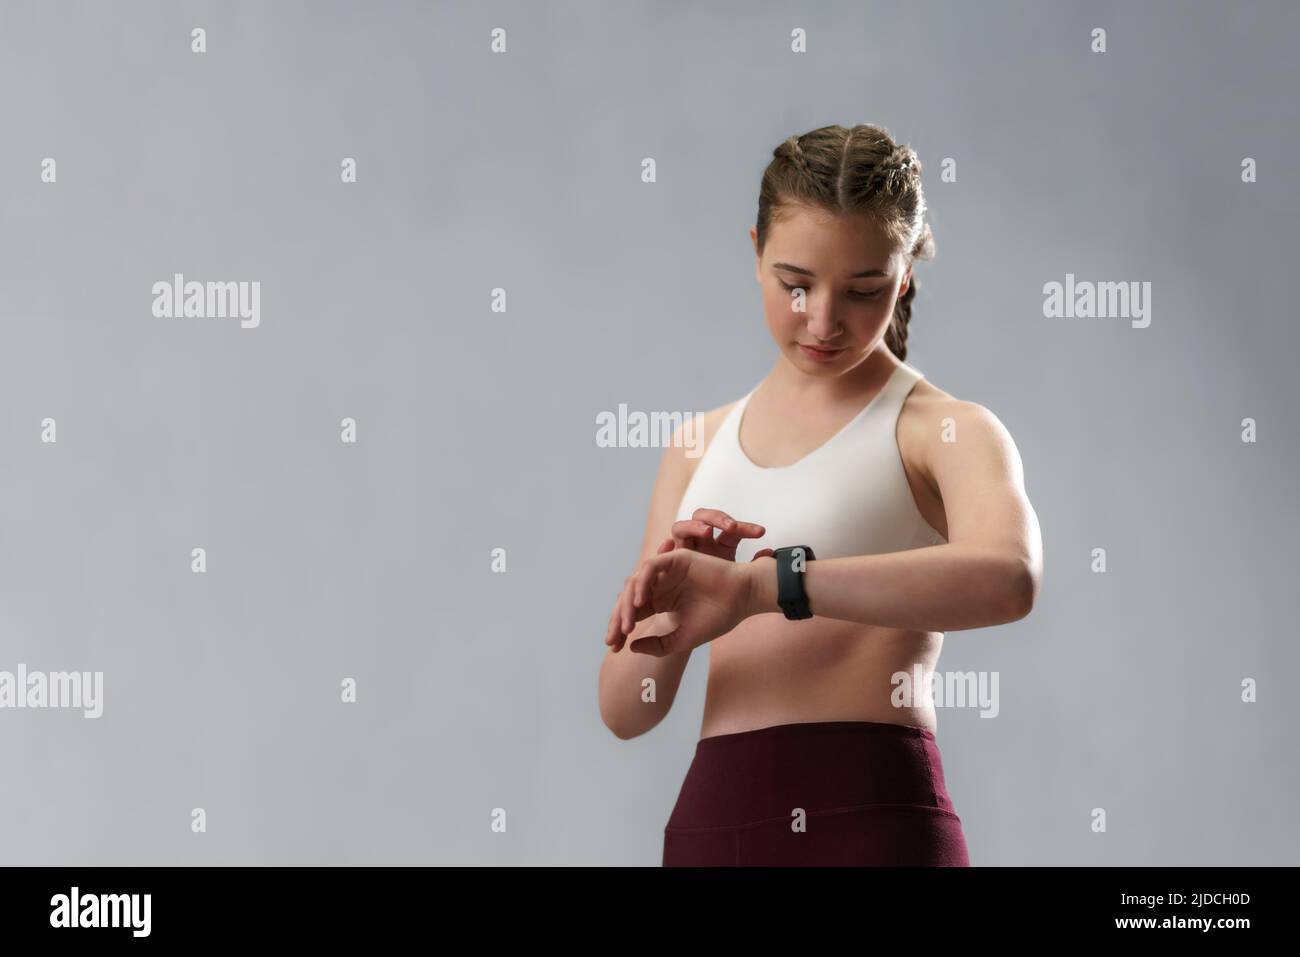 Aufnahme einer jungen Frau, die die Sportsmartwatch ansieht. Fitness-Frau überprüft ihre Leistung. Stockfoto